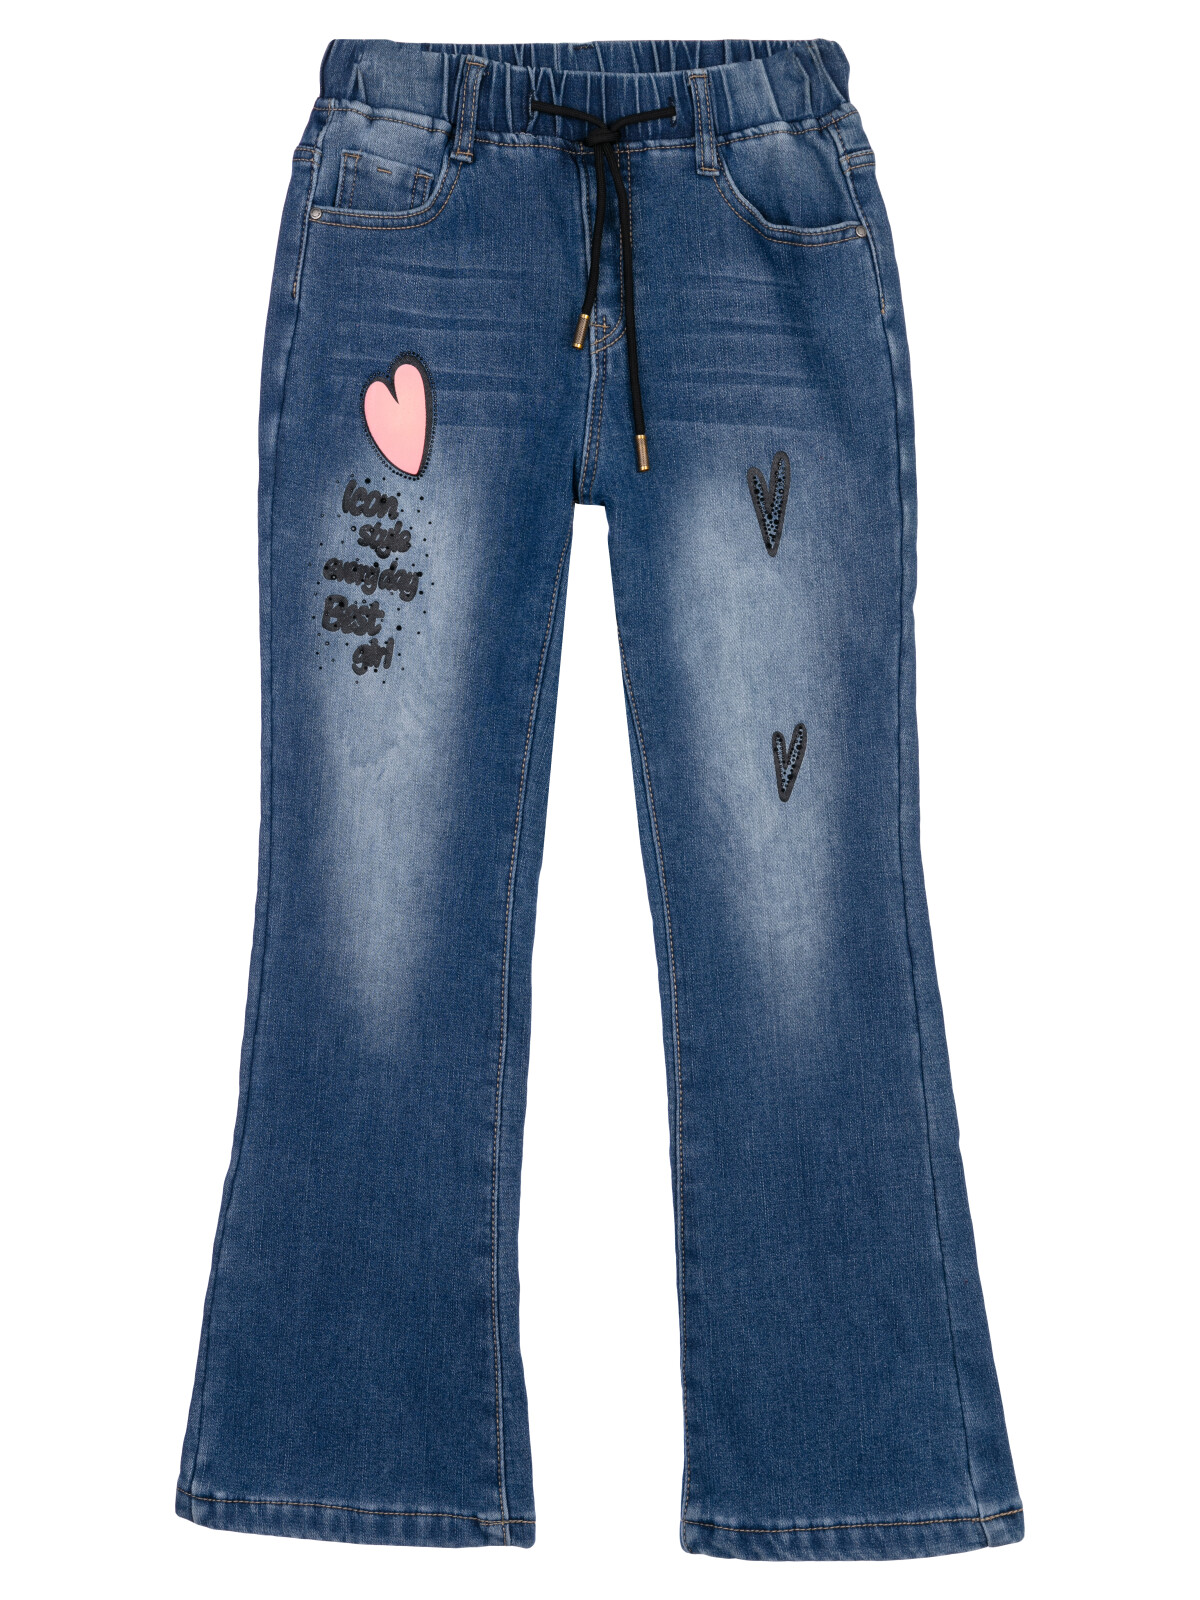 Брюки текстильные джинсовые утепленные флисом для девочек PlayToday, синий, 152